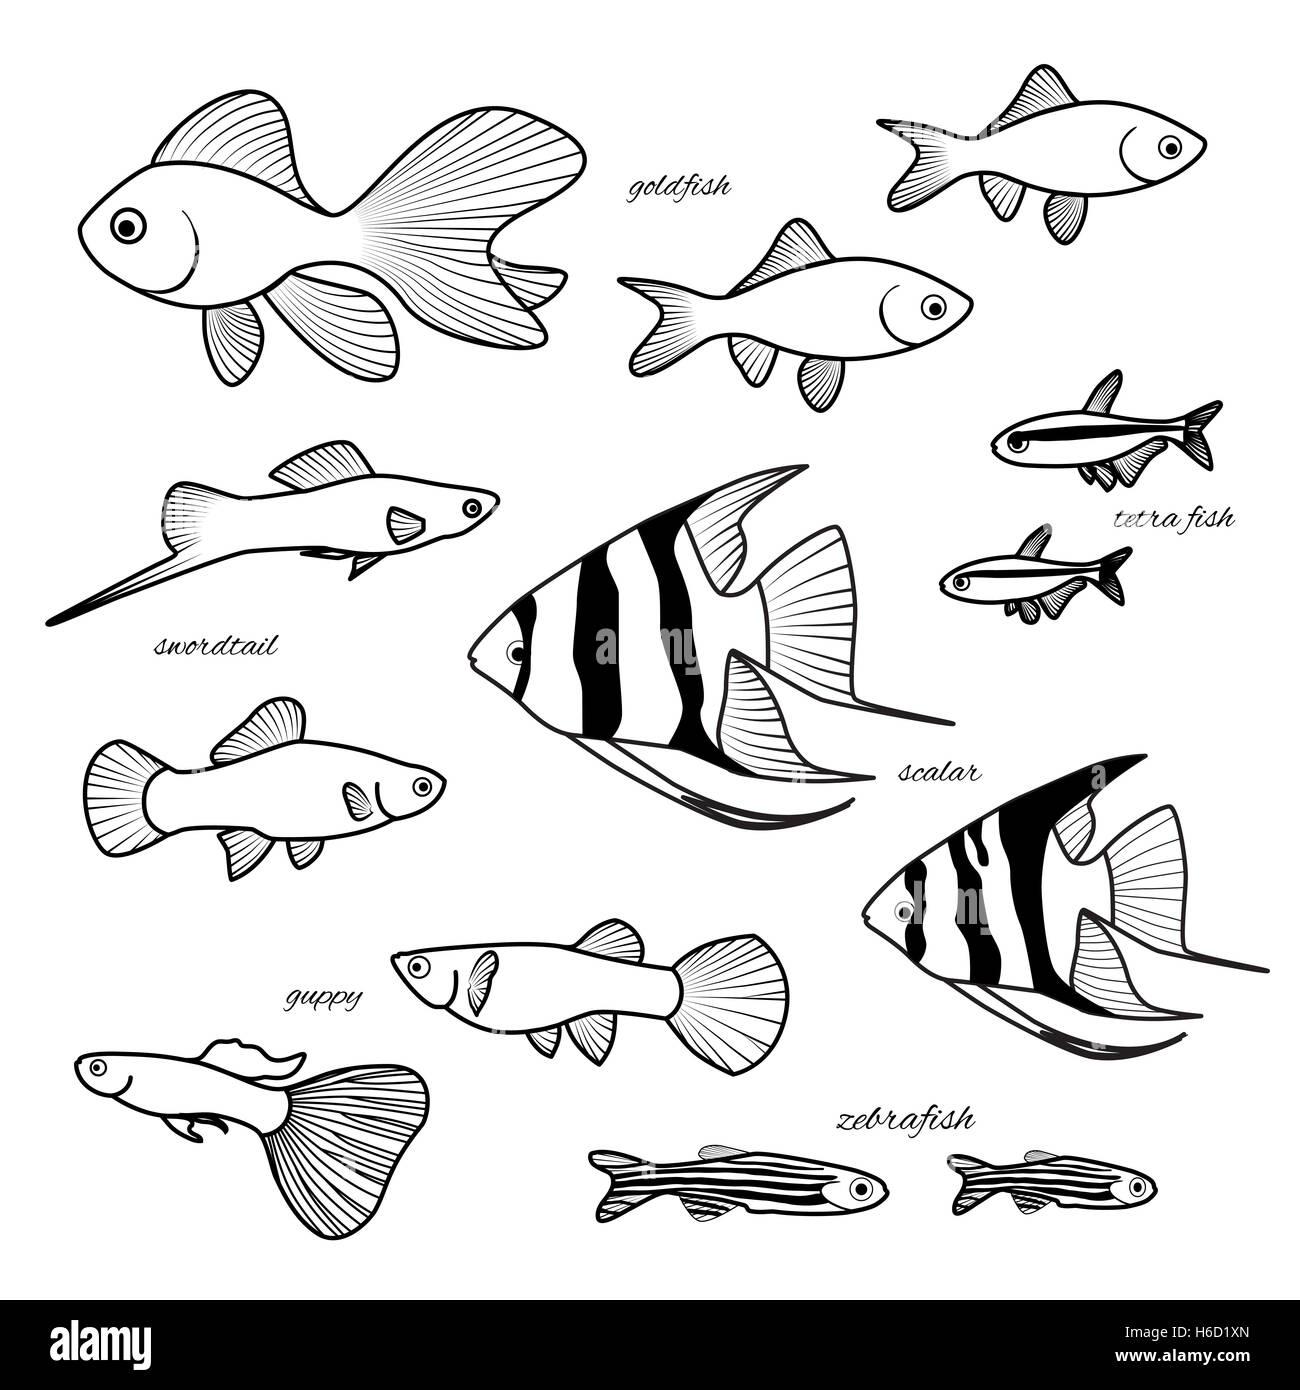 Collection de poissons d'aquarium. Guppy, poisson rouge, poisson zèbre, scalaire, cardinal ou tétra néon, poissons porte-épée à la main l'illustration. X Banque D'Images